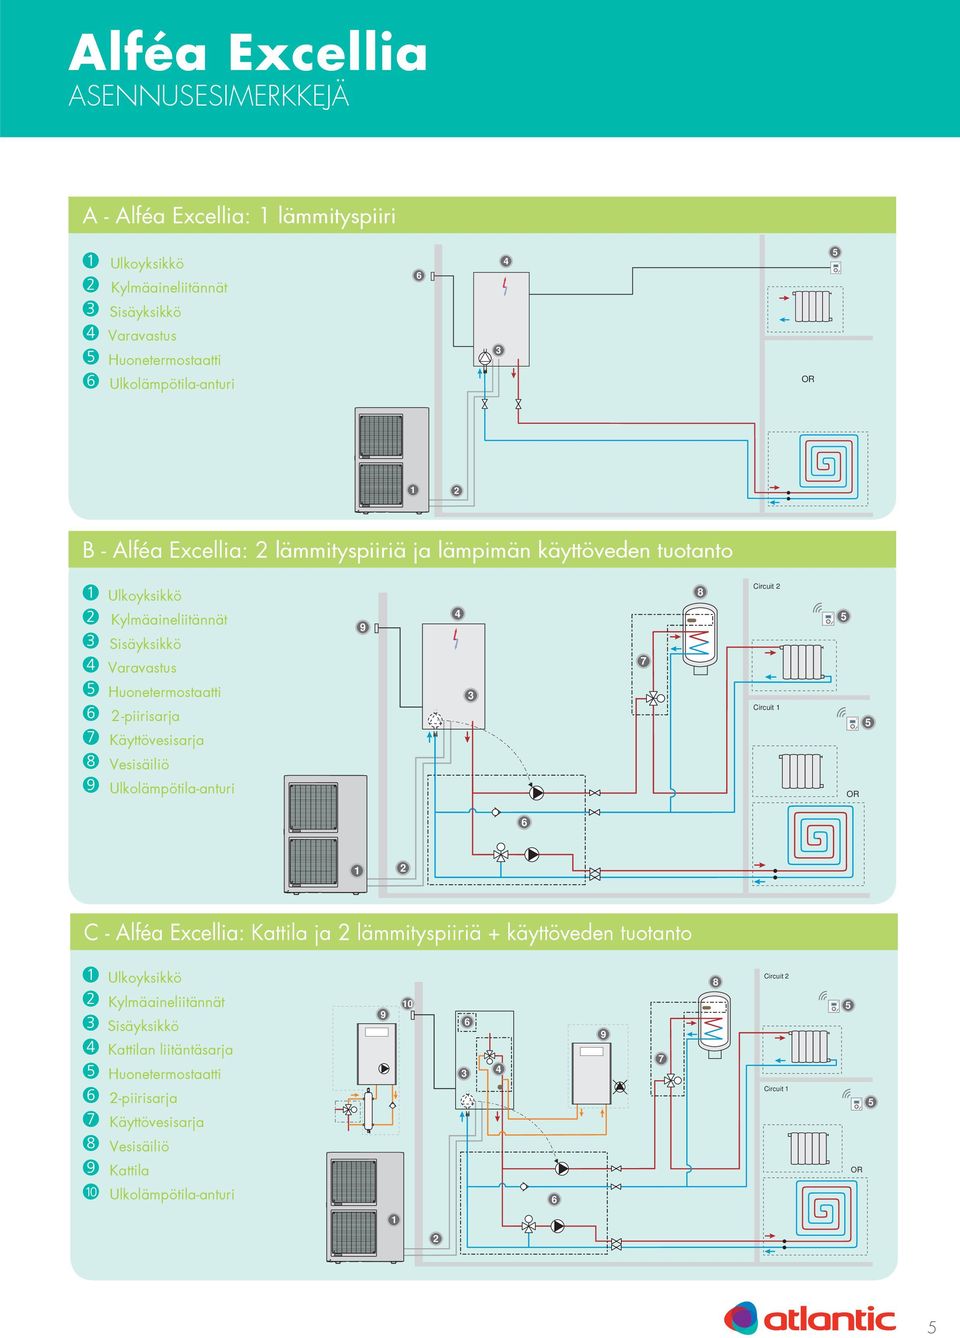 Käyttövesisarja Circuit 1 Vesisäiliö Ulkolämpötila-anturi OR 1 C - Alféa Excellia: Kattila ja lämmityspiiriä + käyttöveden tuotanto